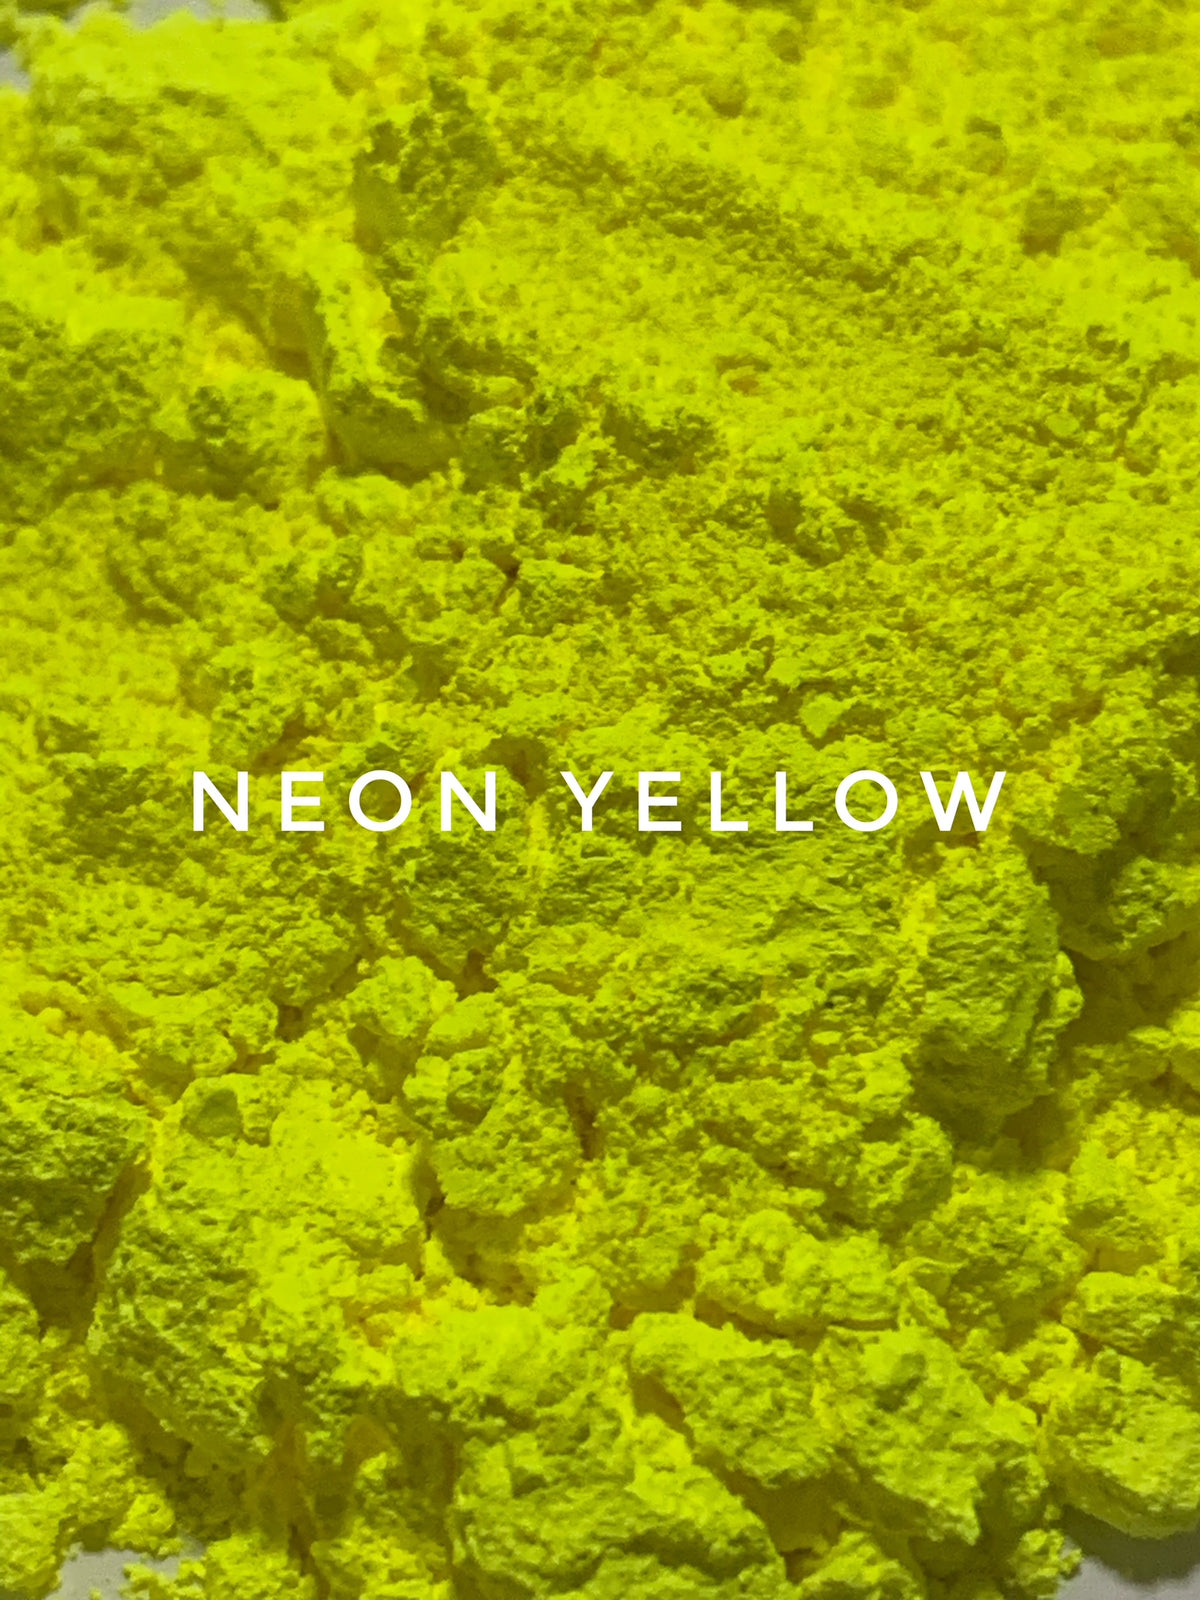 Neon Yellow Pigment